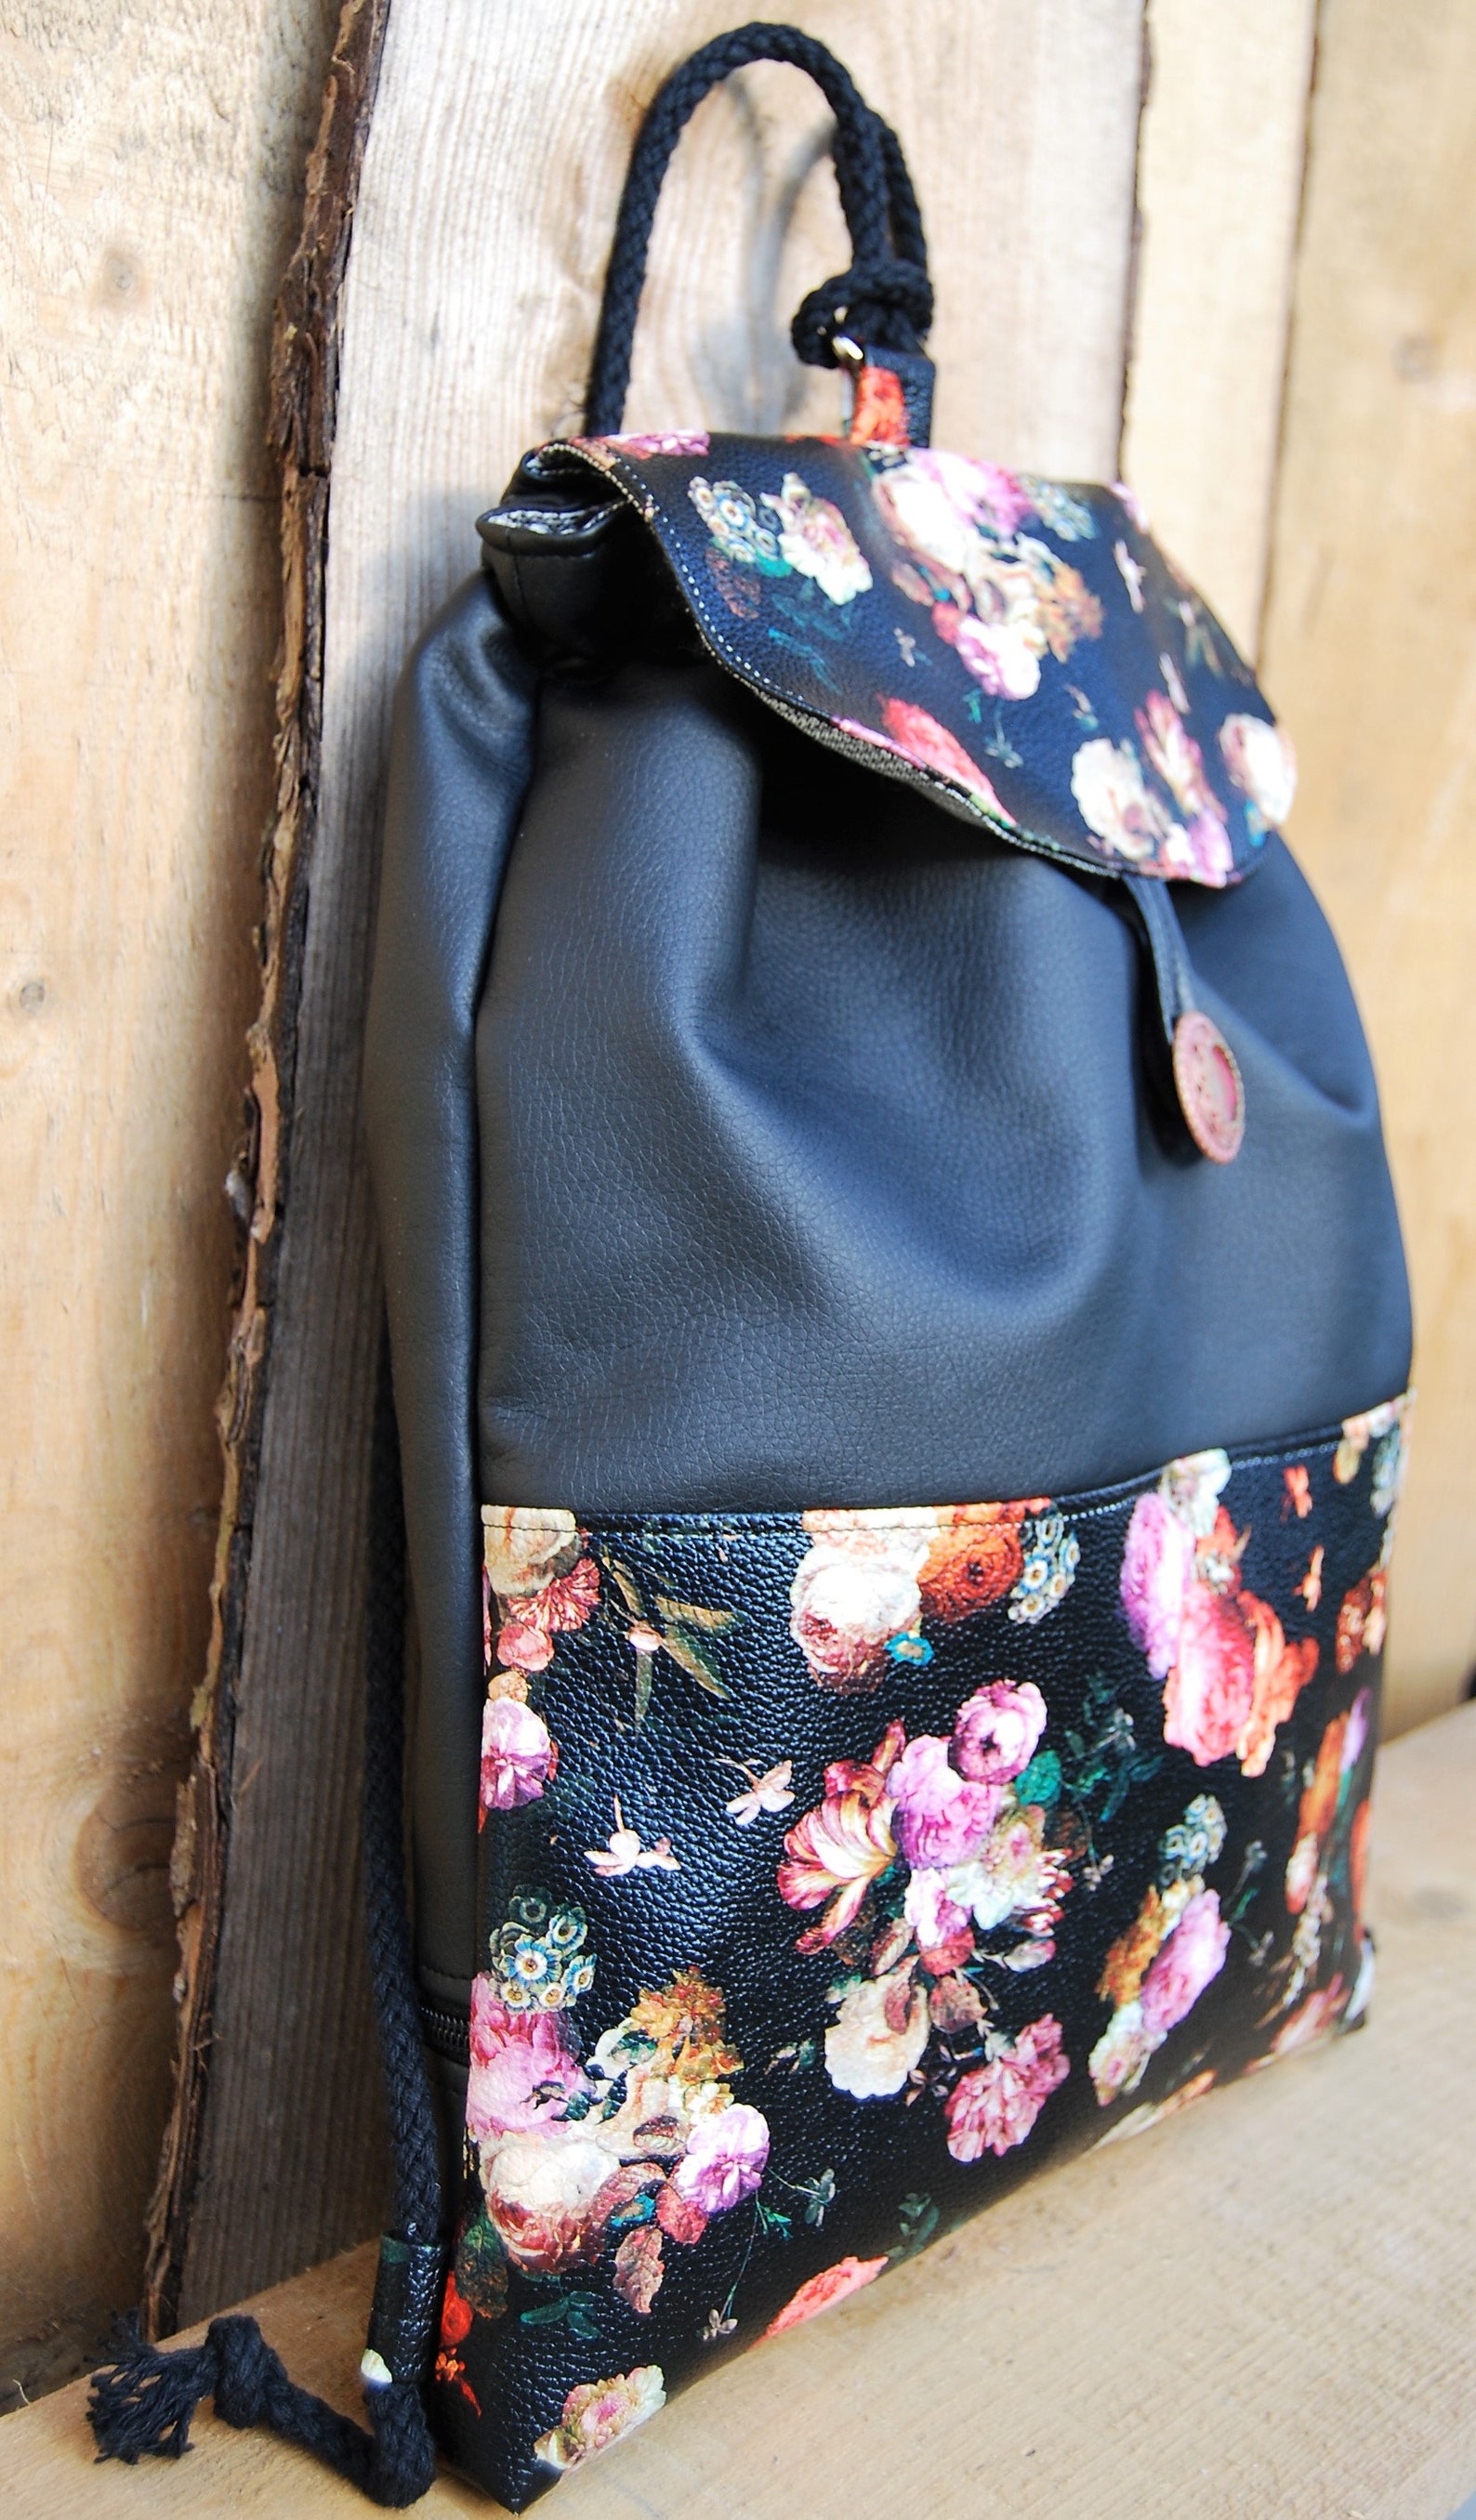 Backpack Rose Vintage Black Flowers Backpack For Women | Etsy